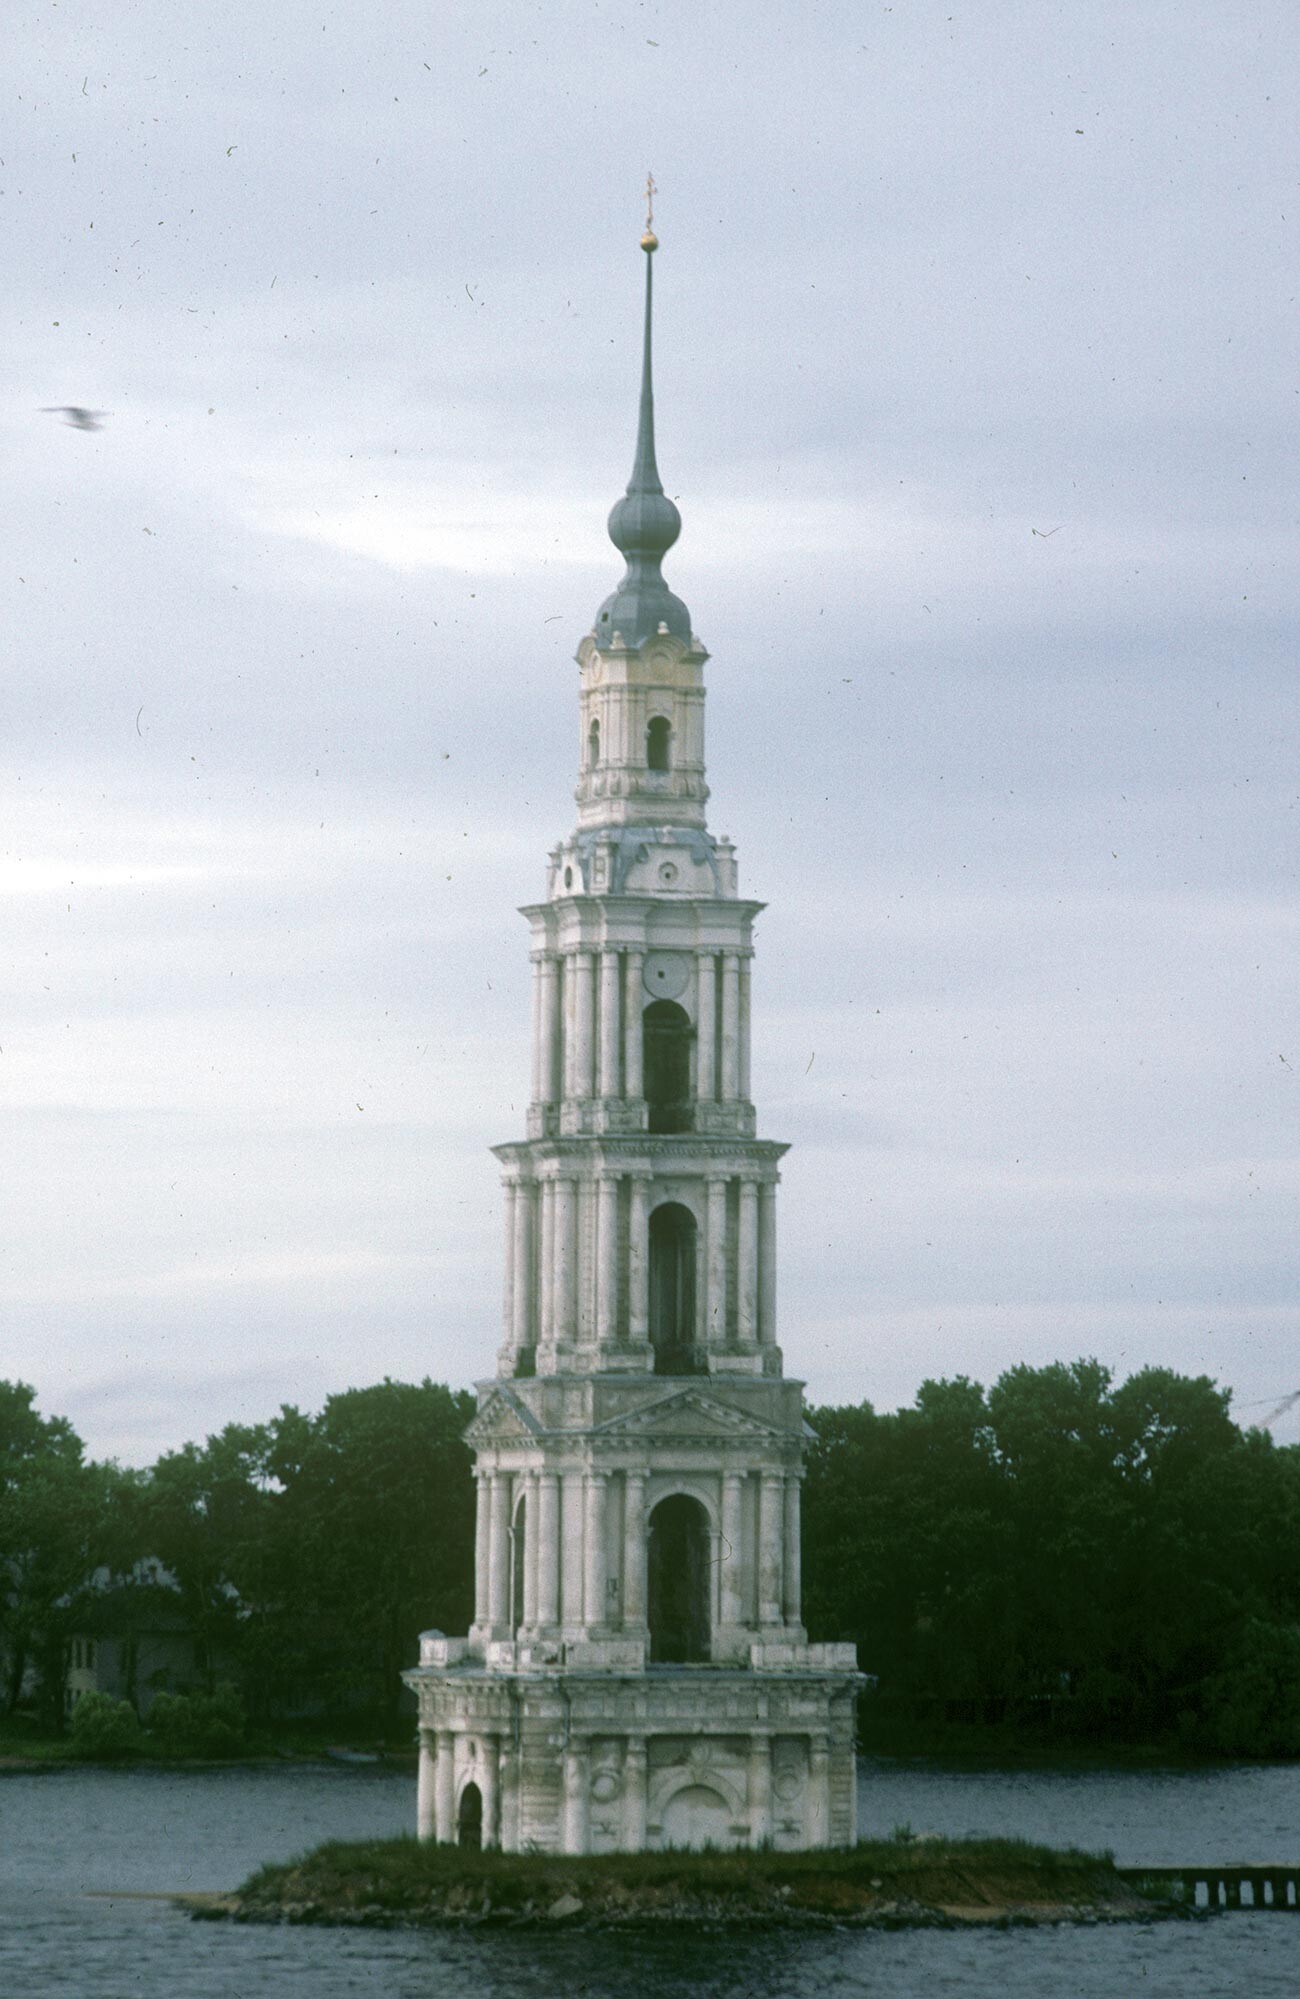 カリャジン。聖ニコライ大聖堂の鐘楼。大聖堂は、ウグリチ貯水池（ヴォルガ川の一部をなす）の建設中に取り壊されたが、鐘楼は標識として残されていた。1991年8月9日。